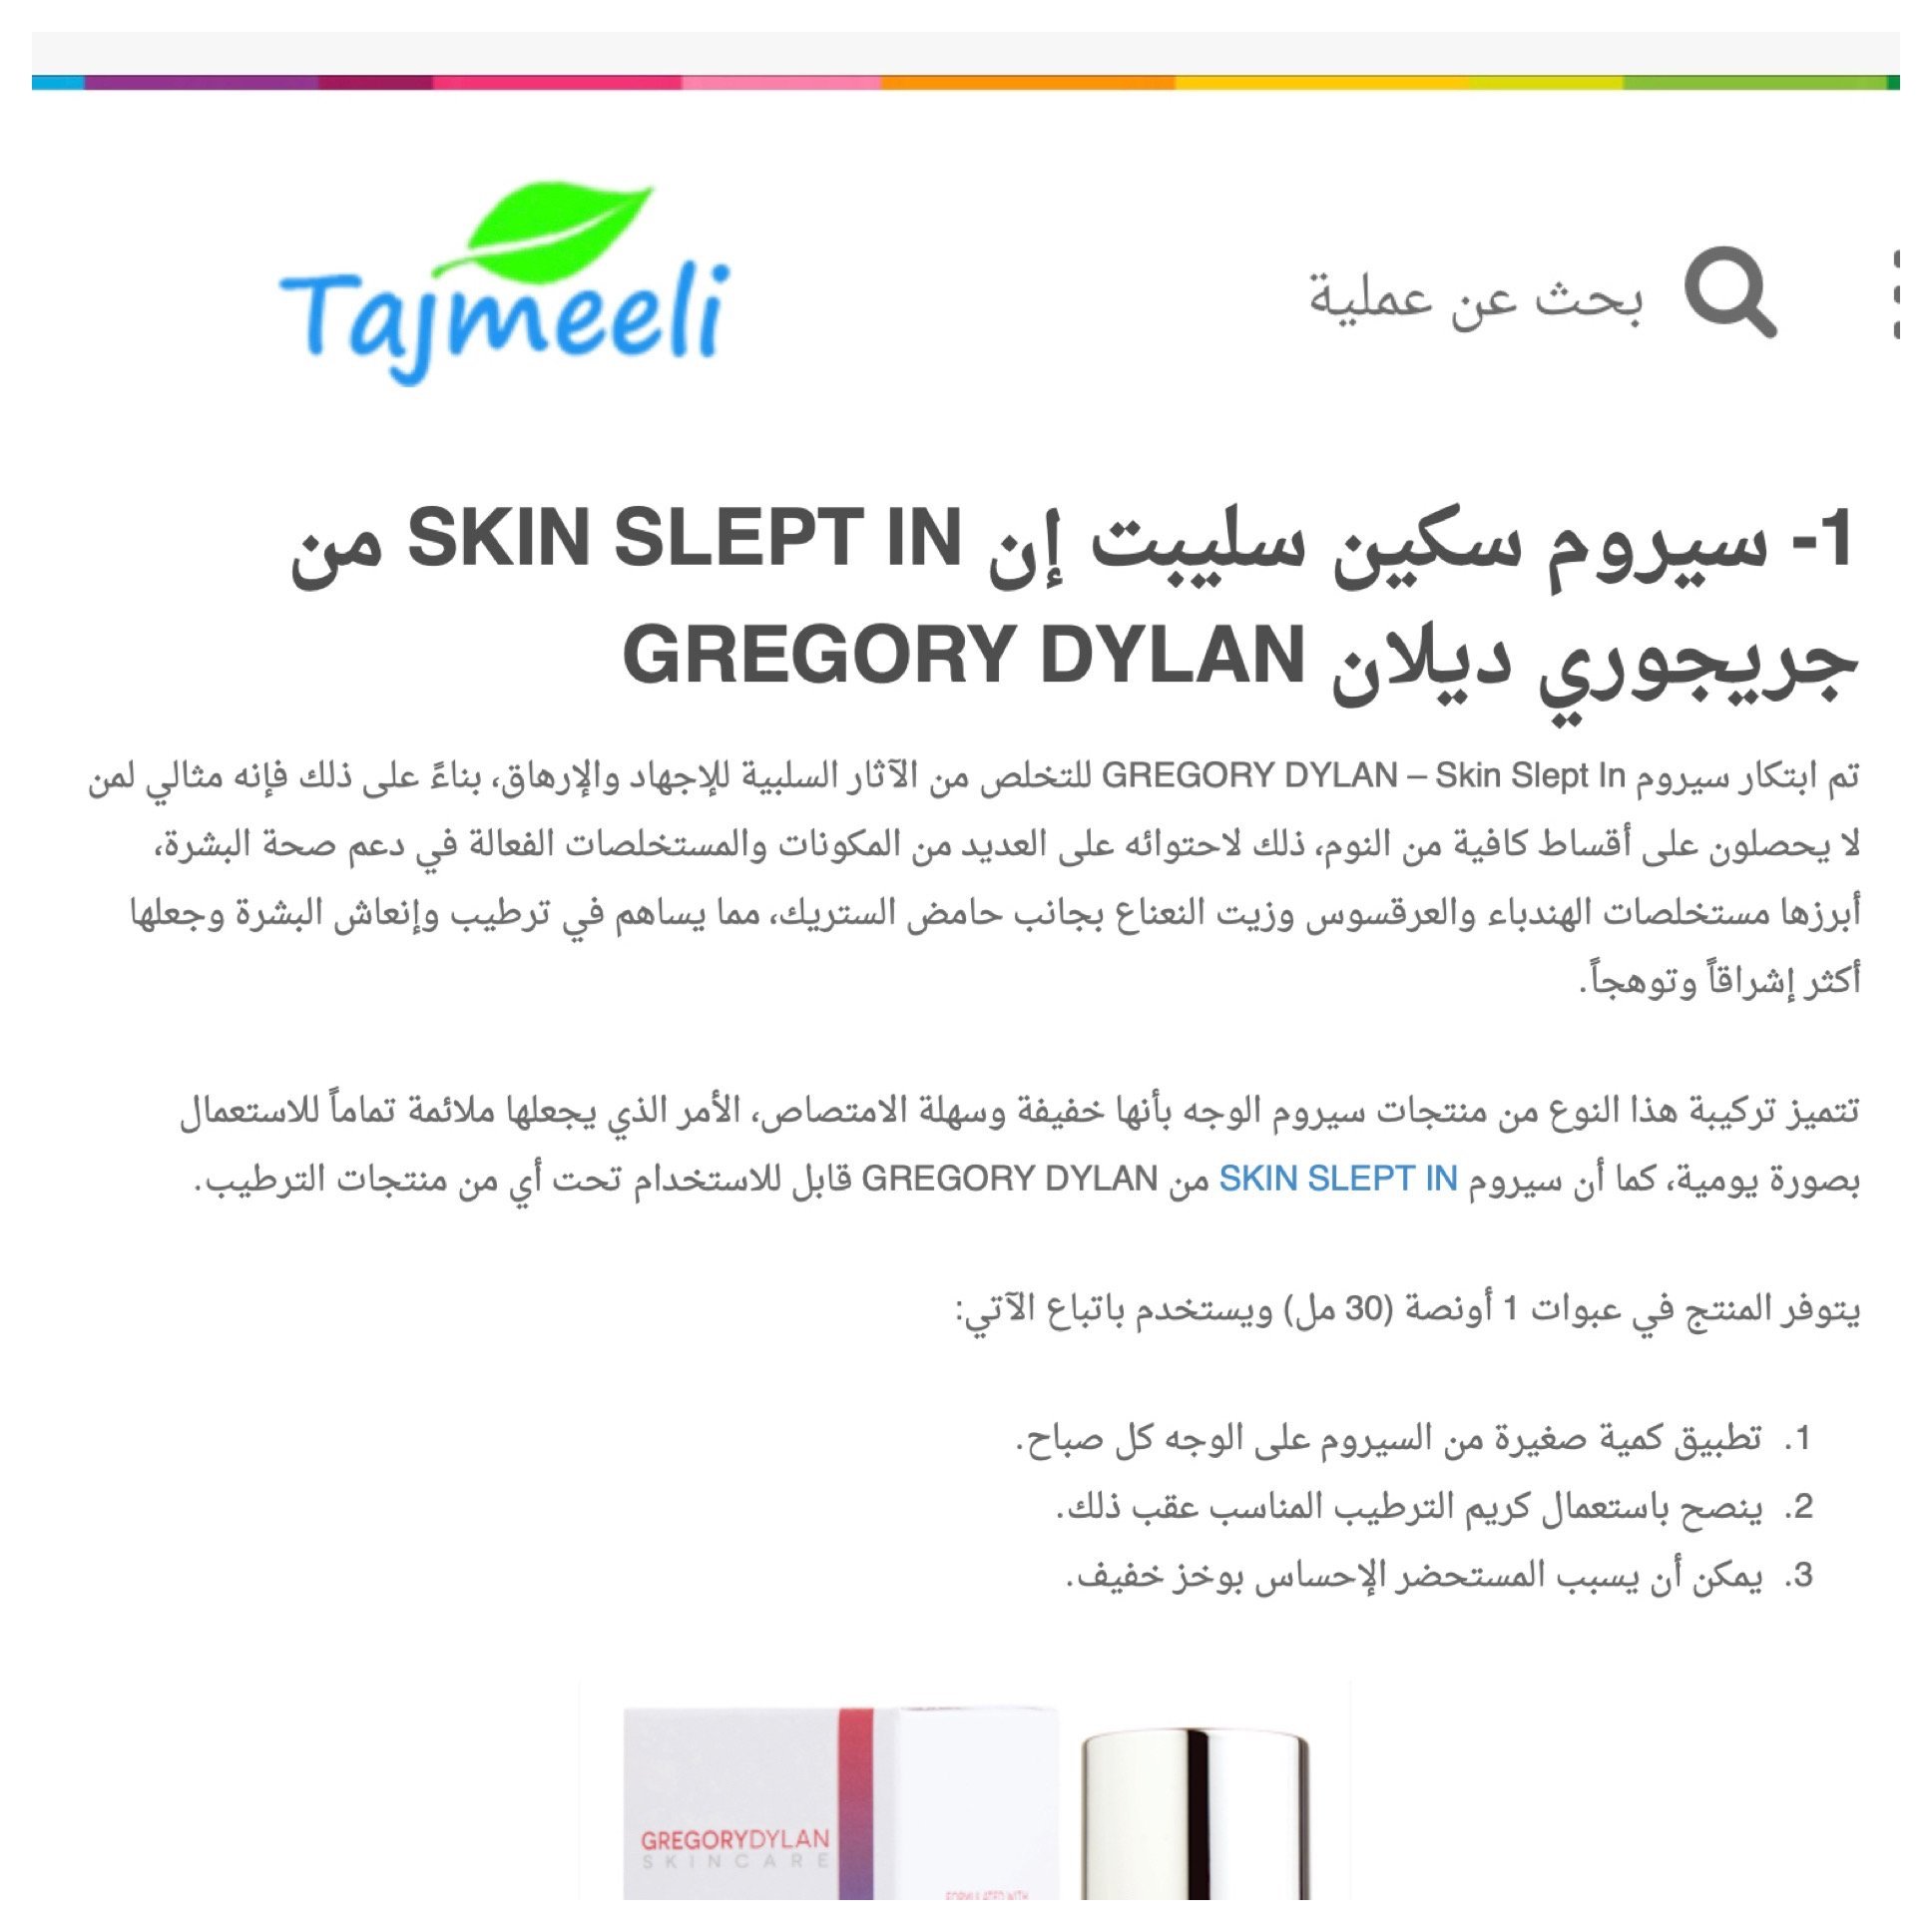 Gregory Dylan Skin Slept In featured on Tajmeeli